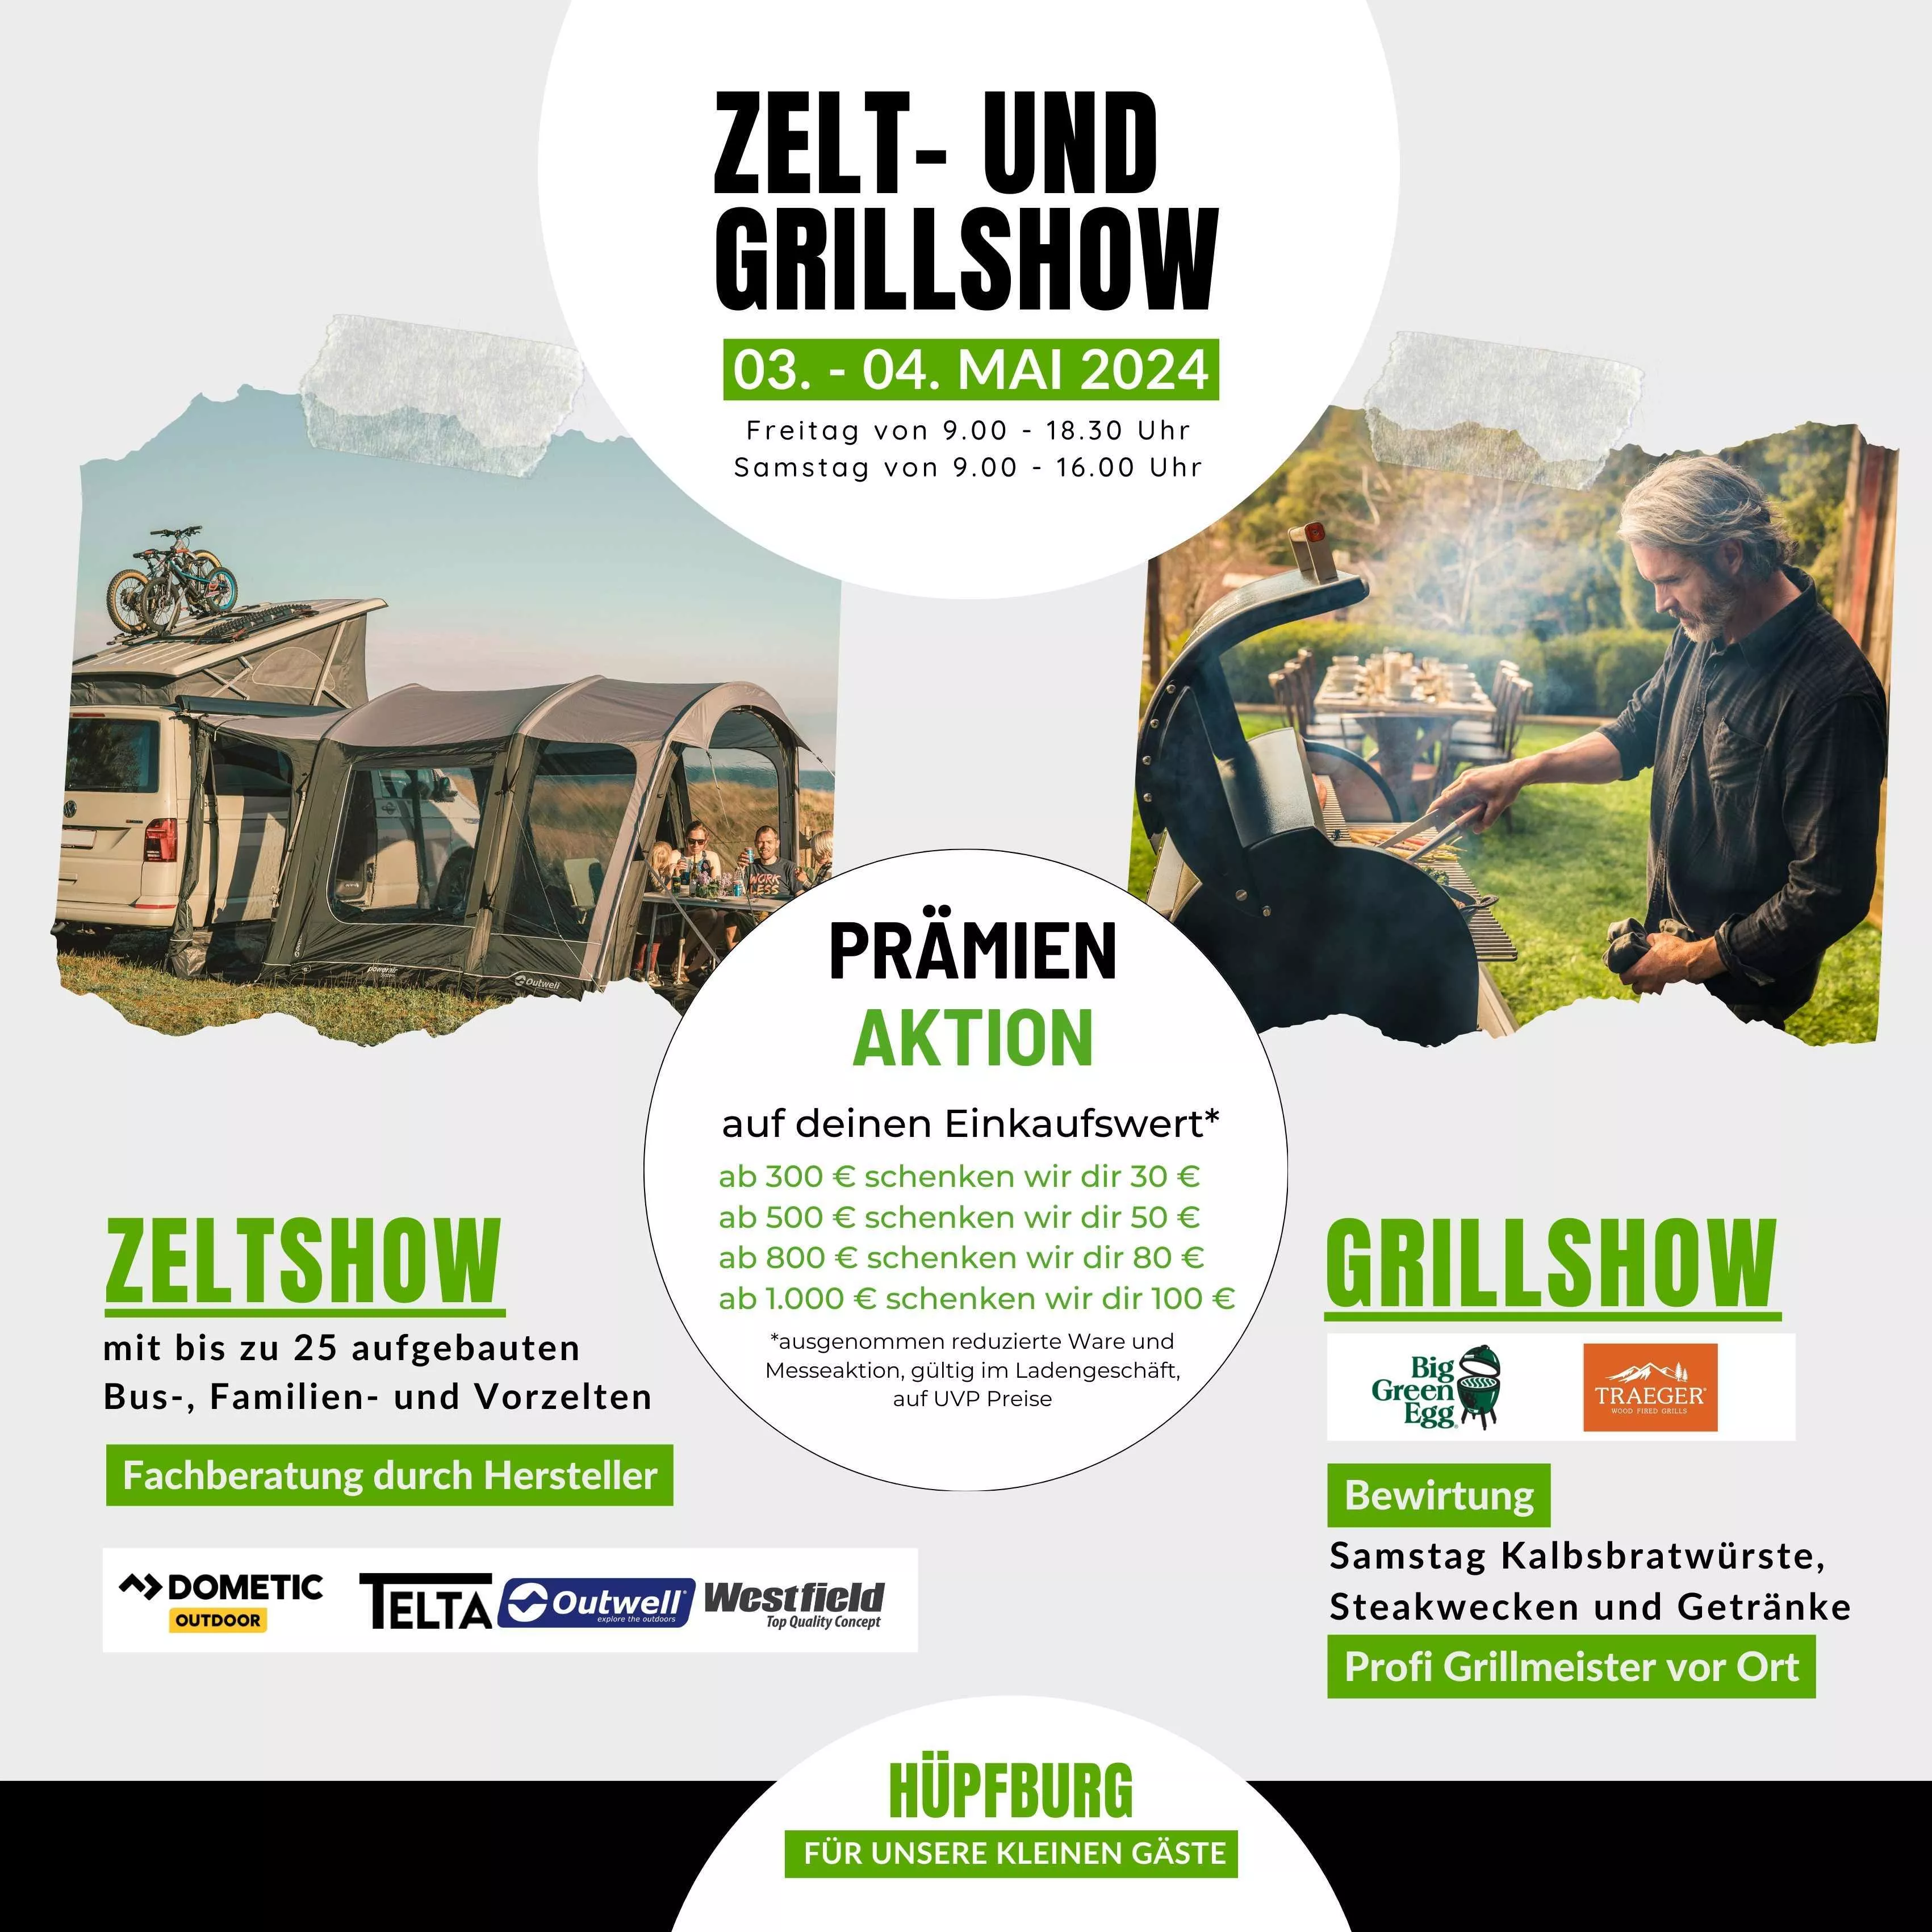 Zelt- und Grillshow 03. - 04. Mai 2024